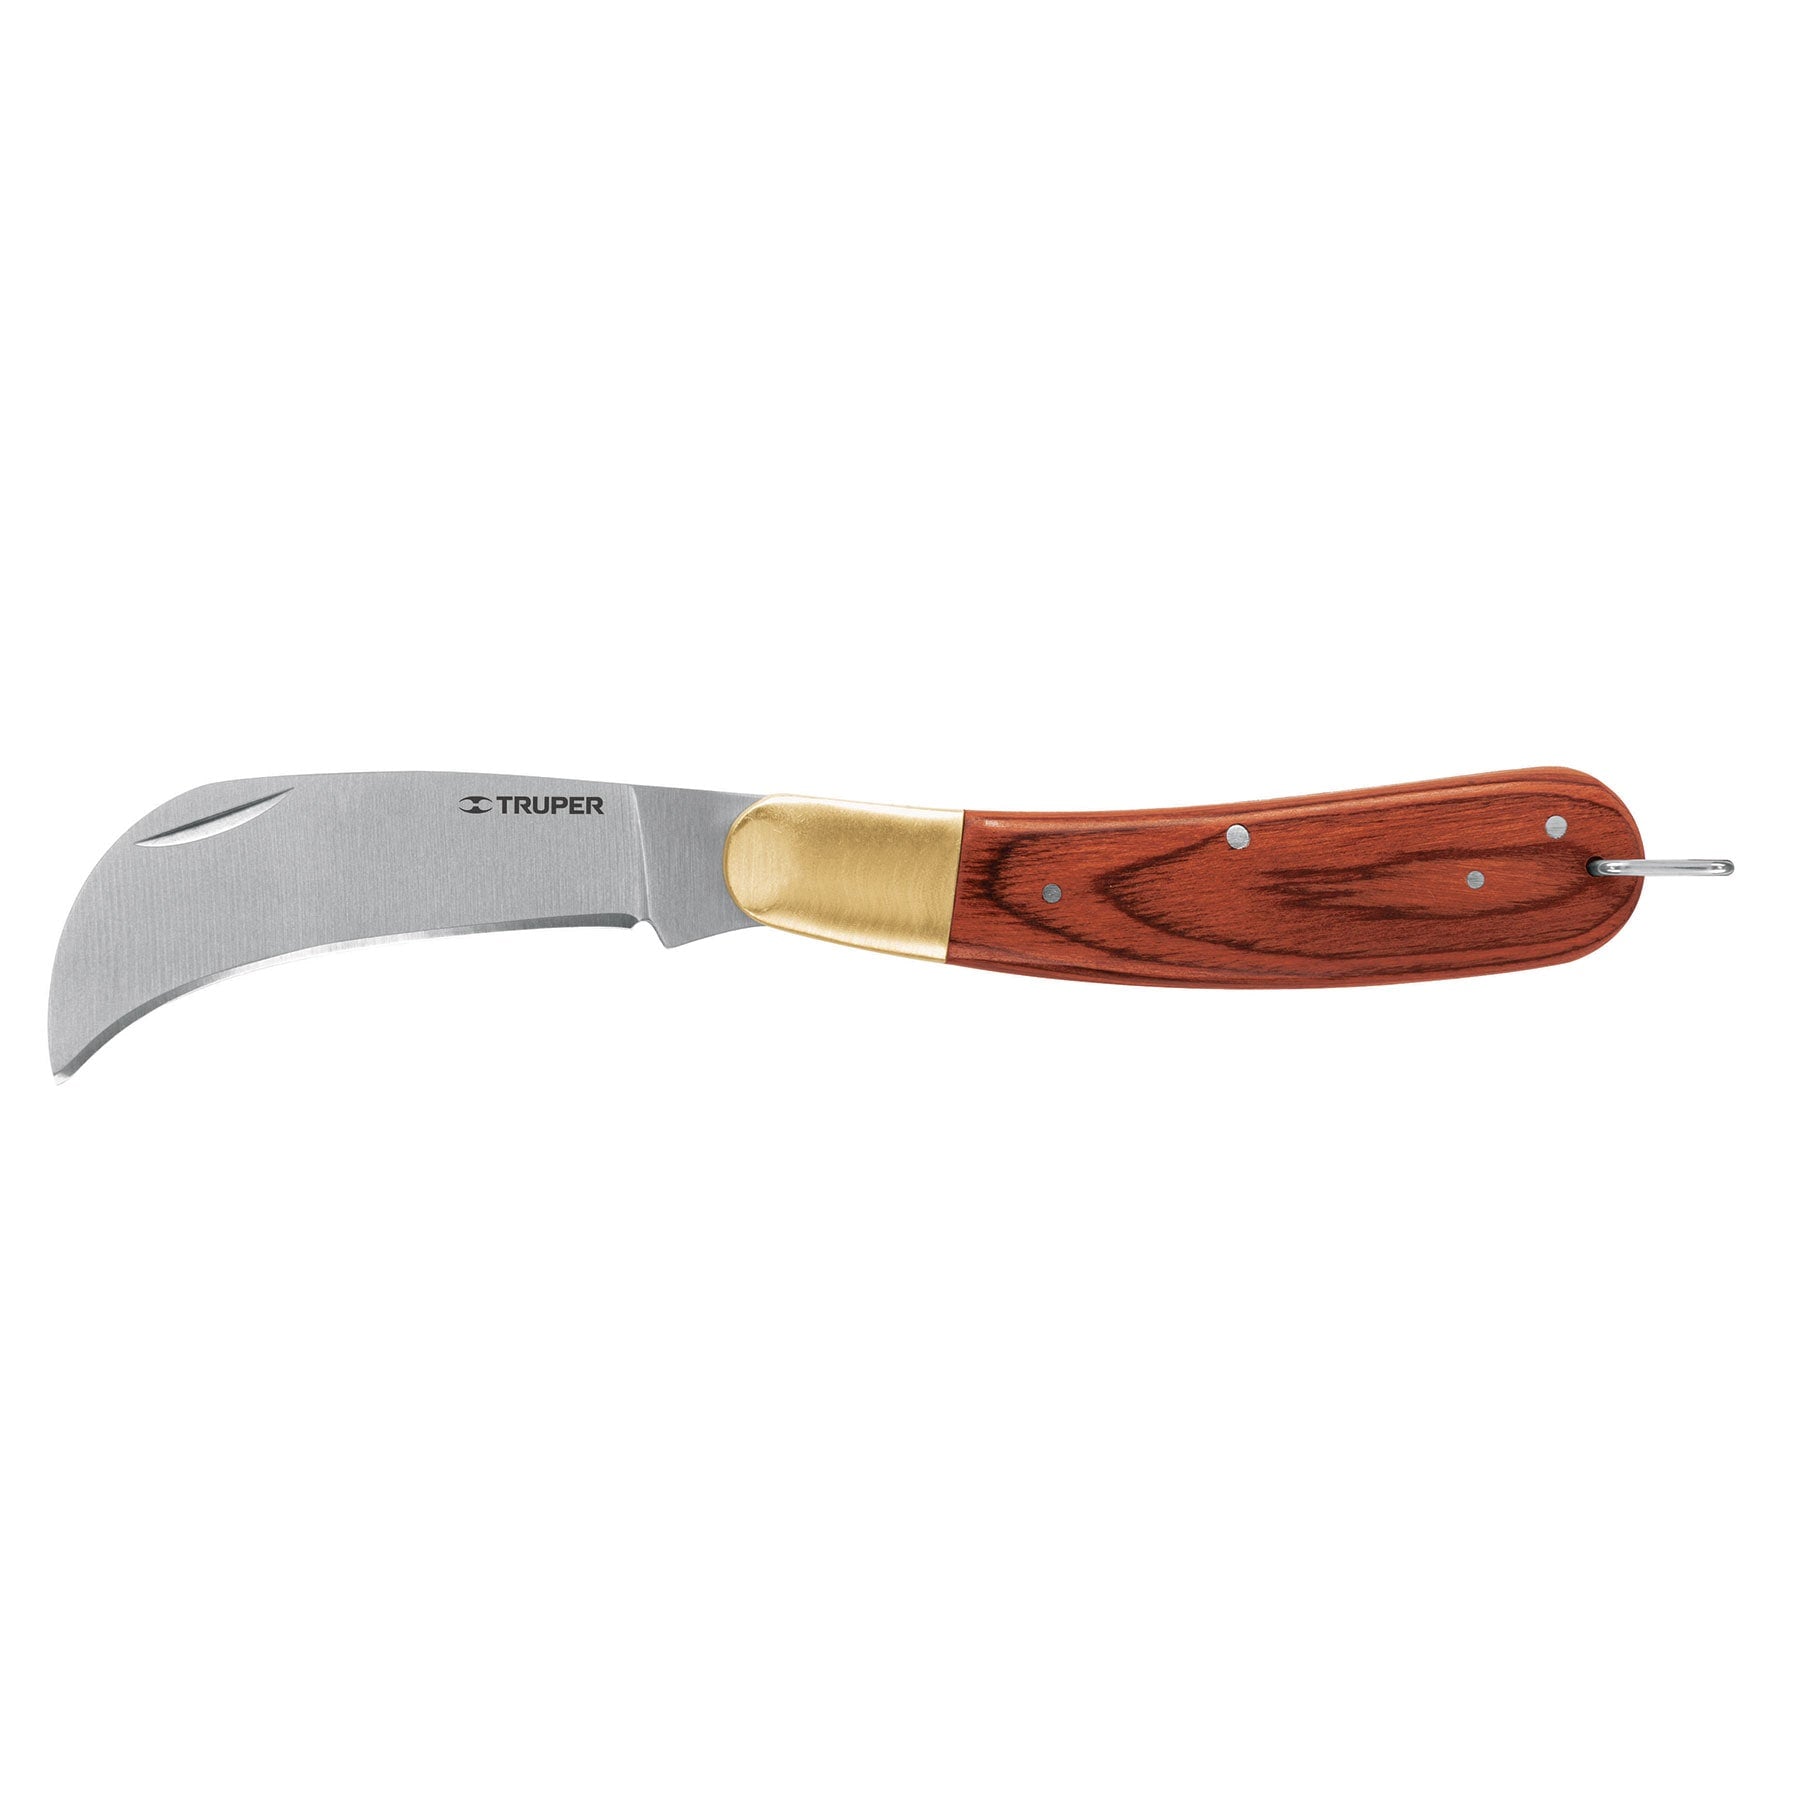 Pocket Knife Curved Blade Electrician-Docking  Truper